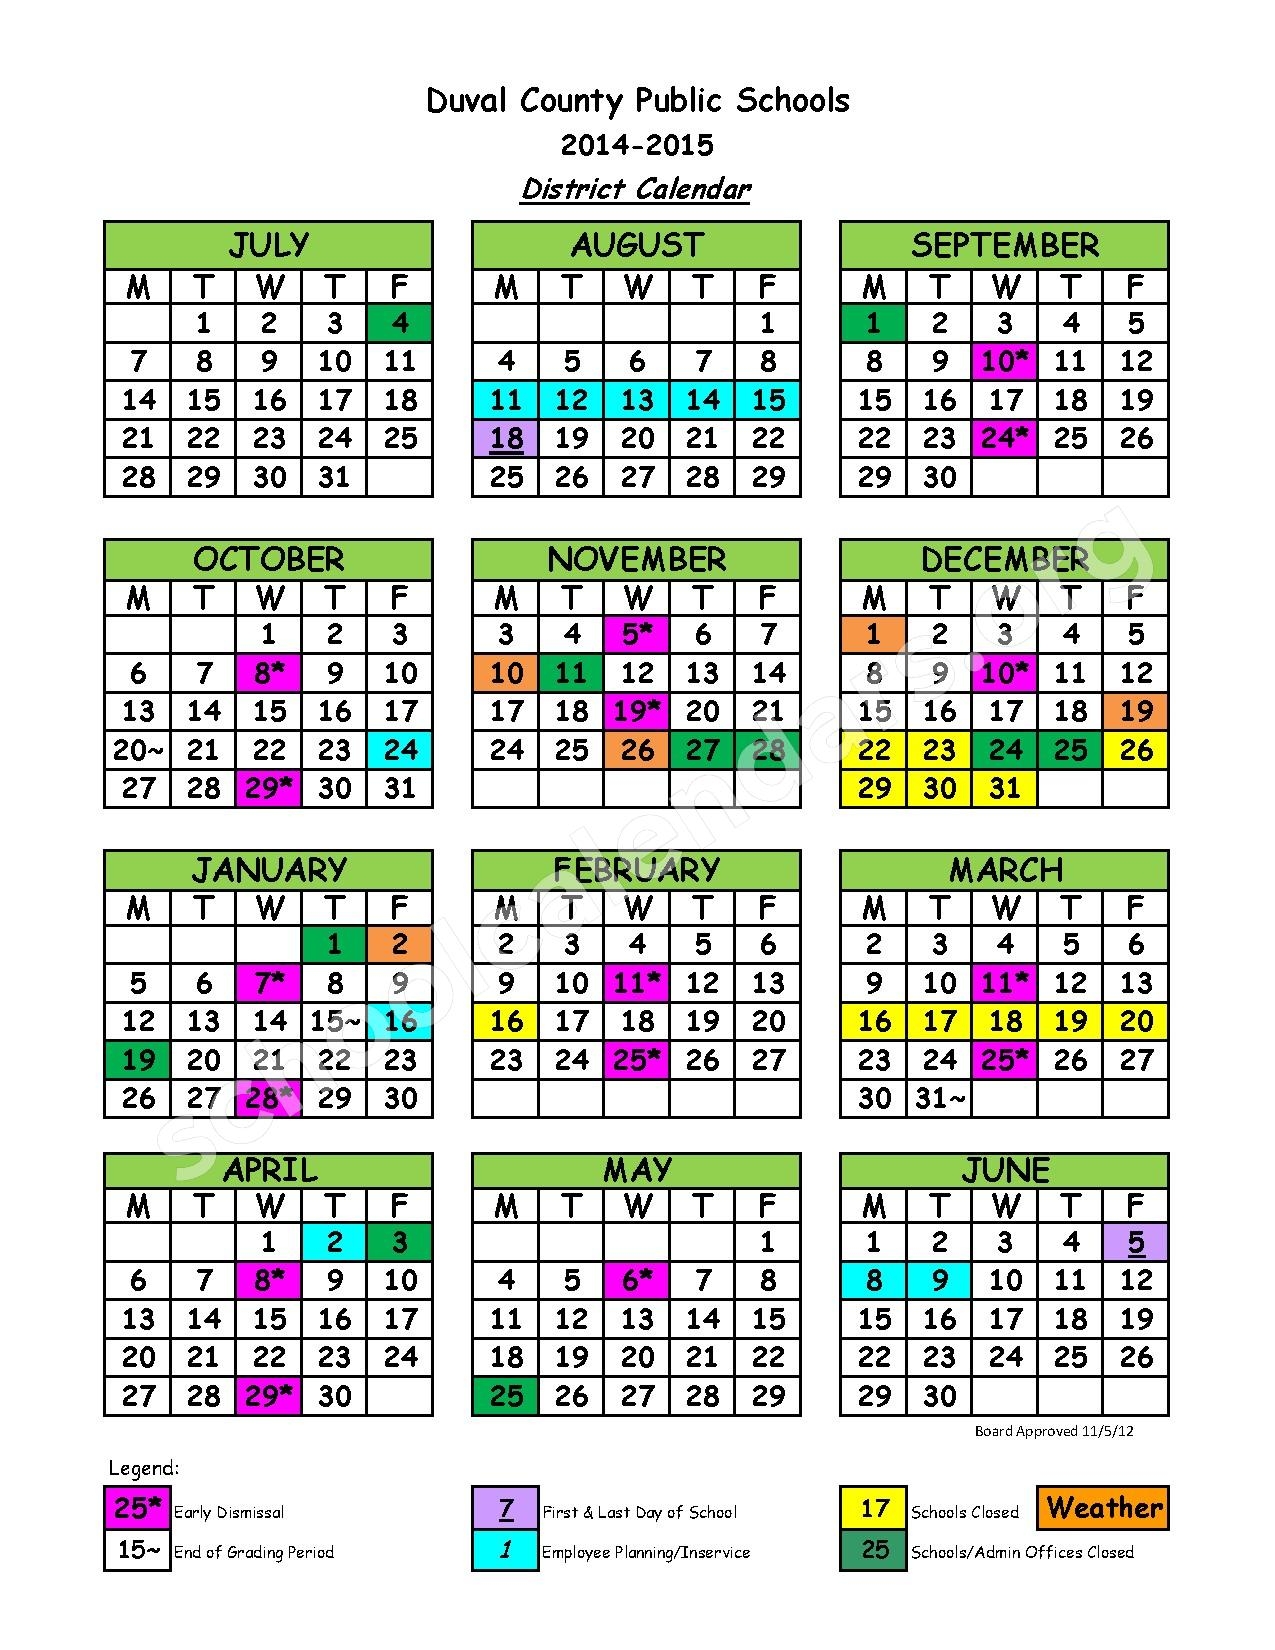 Duval School Calendar Qualads